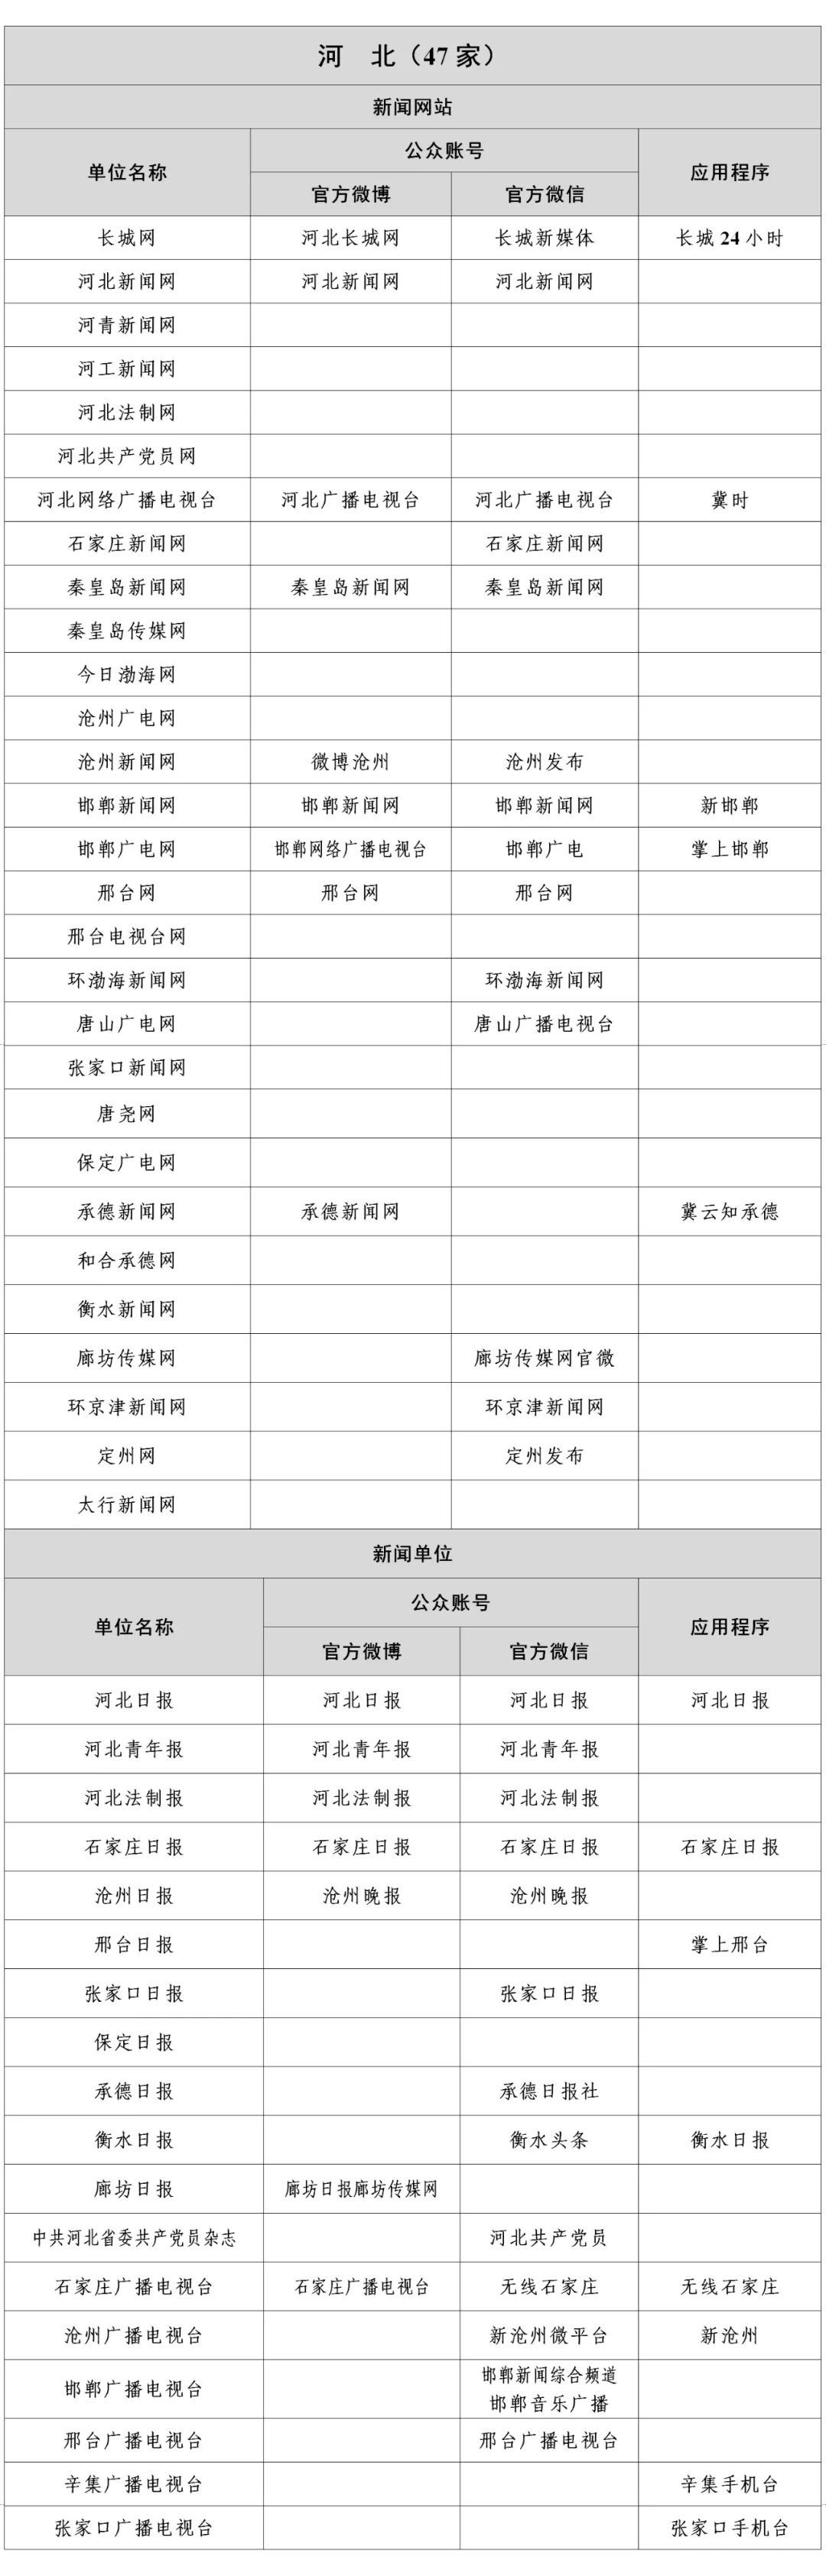 河北新闻信息稿源单位名单